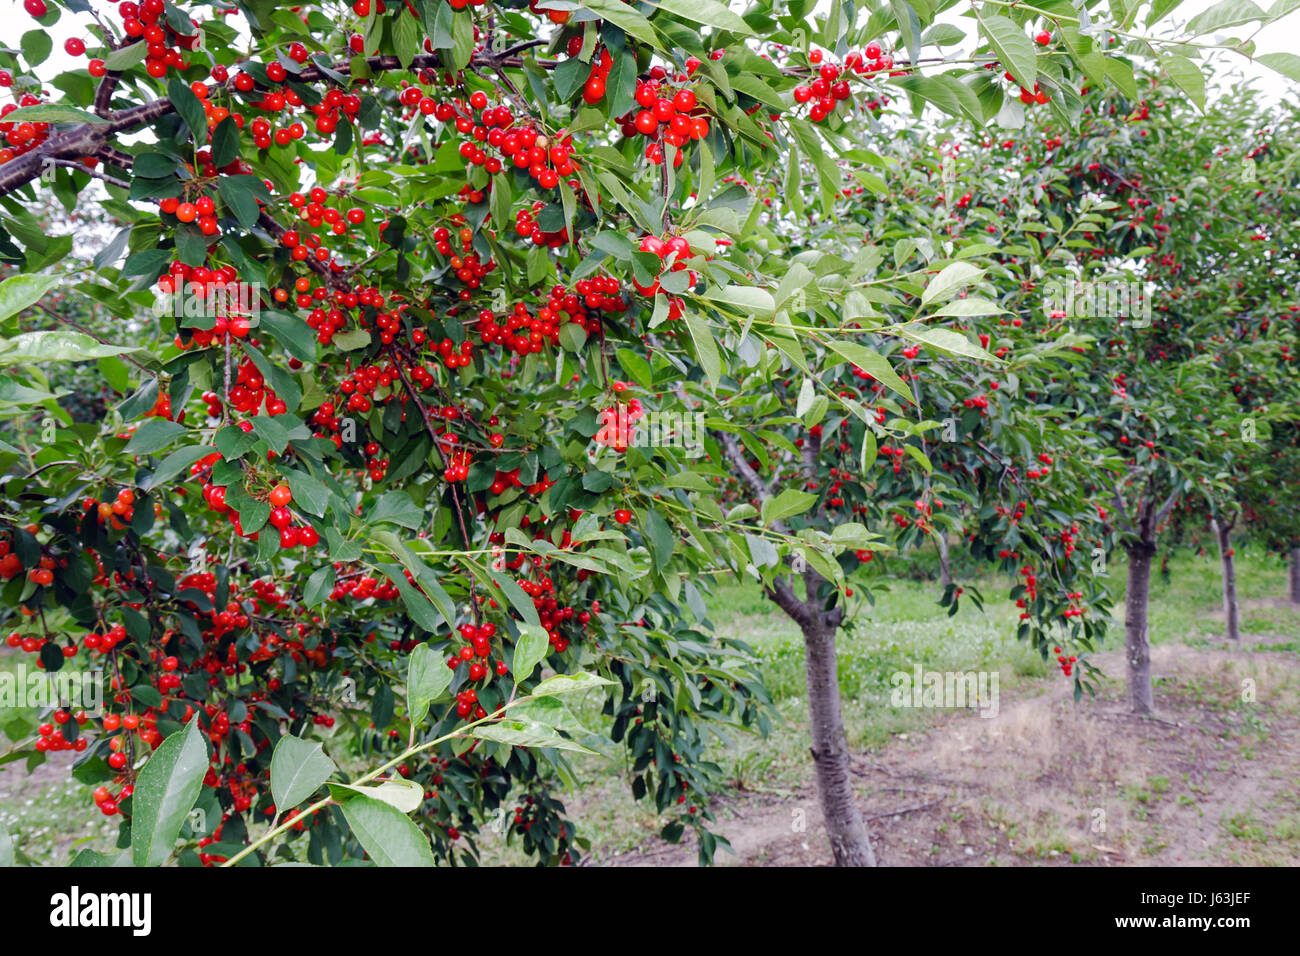 Michigan Traverse City,Old Mission Peninsula,cereza huerta,árbol,fruta,ceraso,racimos,agricultura,rama,rojo,MI080717101 Foto de stock